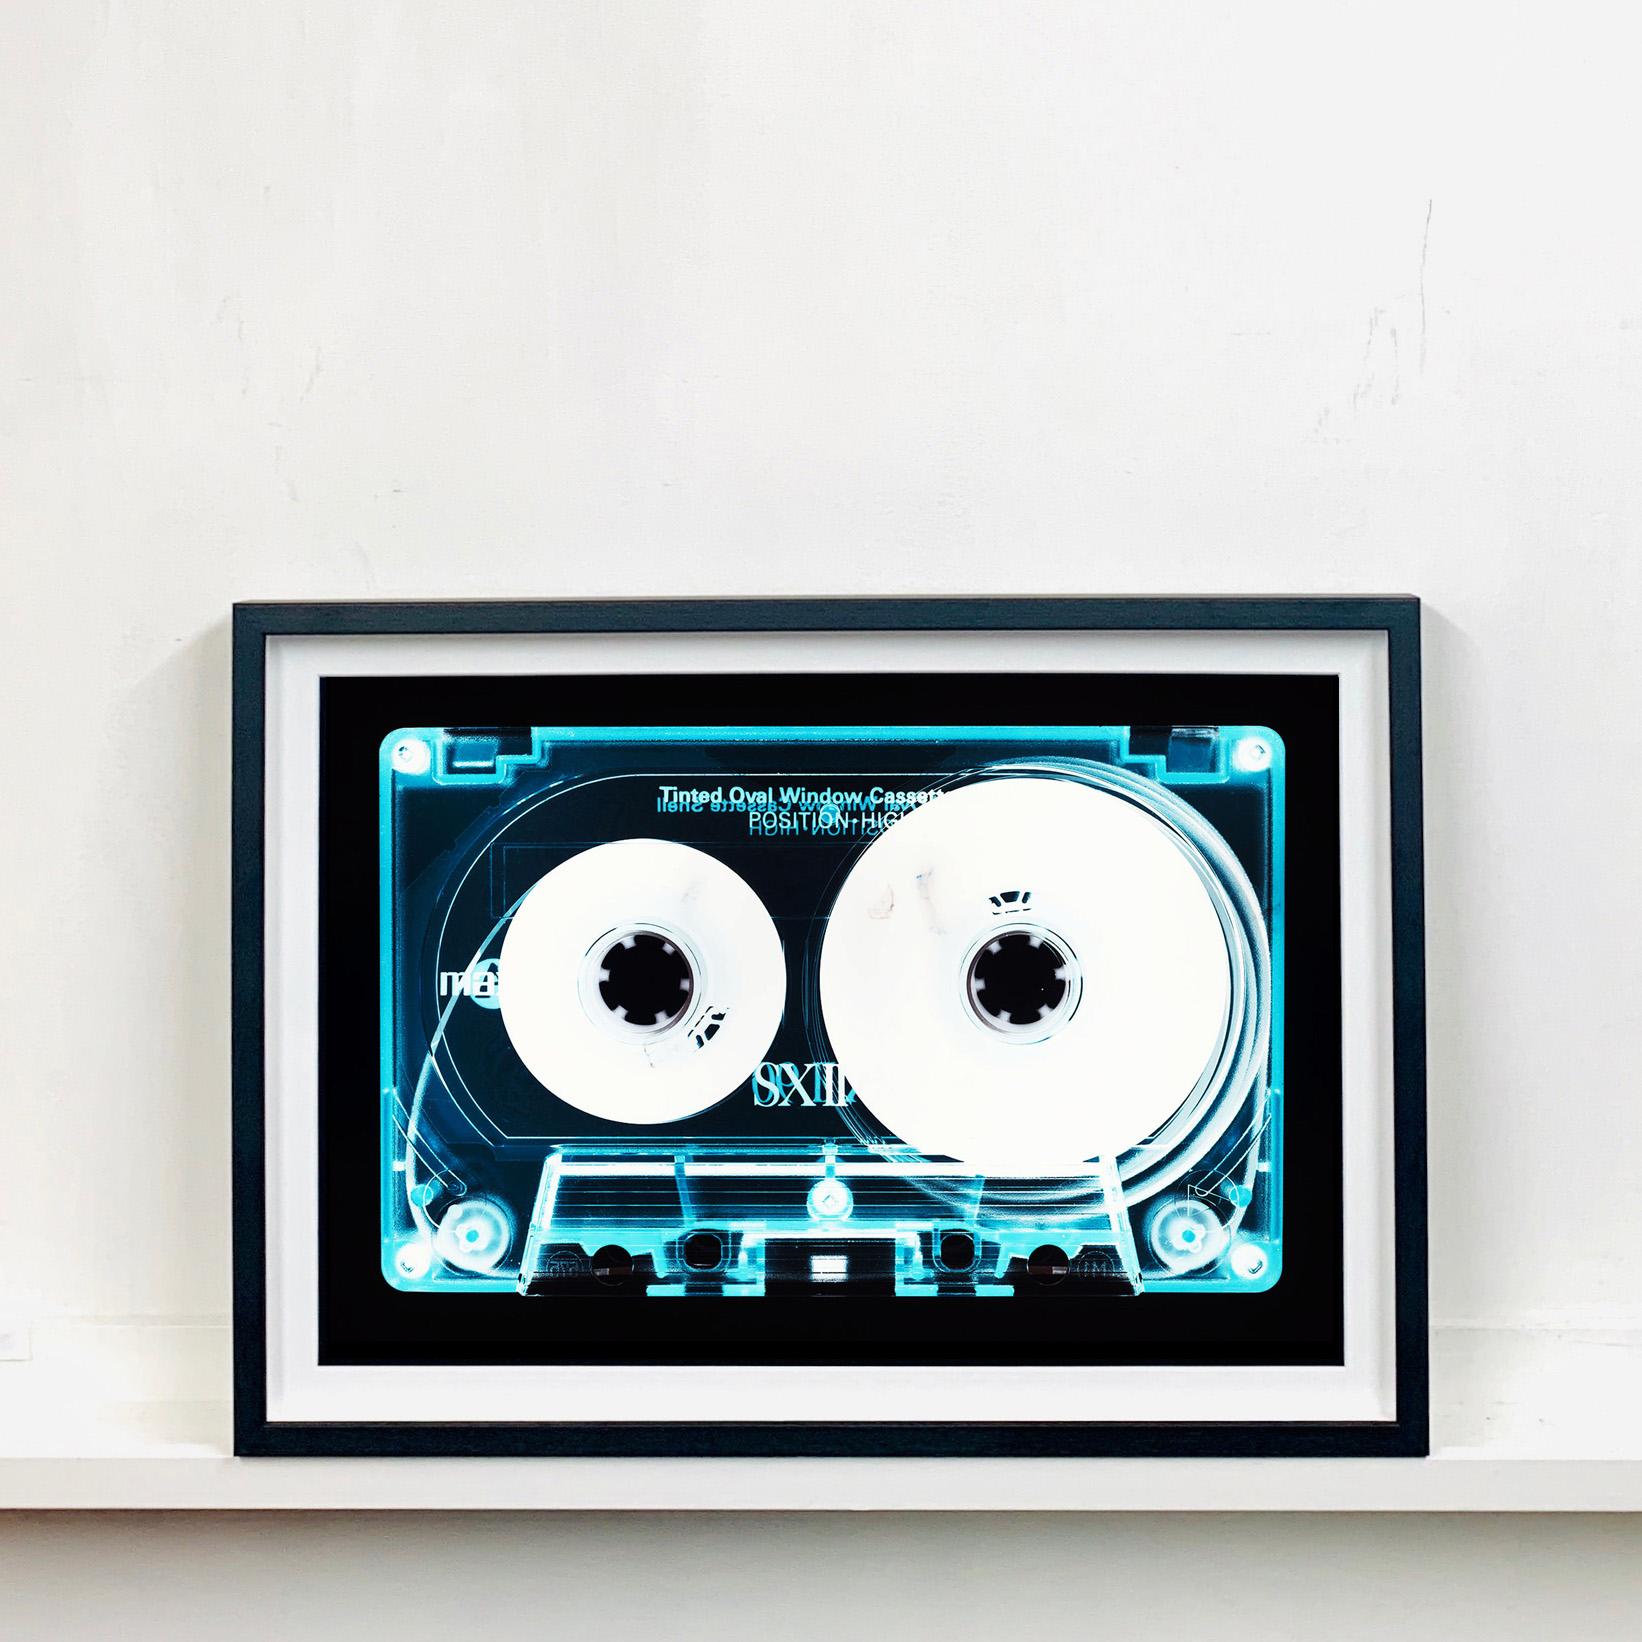 Collection de tapisserie - Cassette de fenêtre ovale teintée - Music Pop Art conceptuel en couleurs - Print de Heidler & Heeps